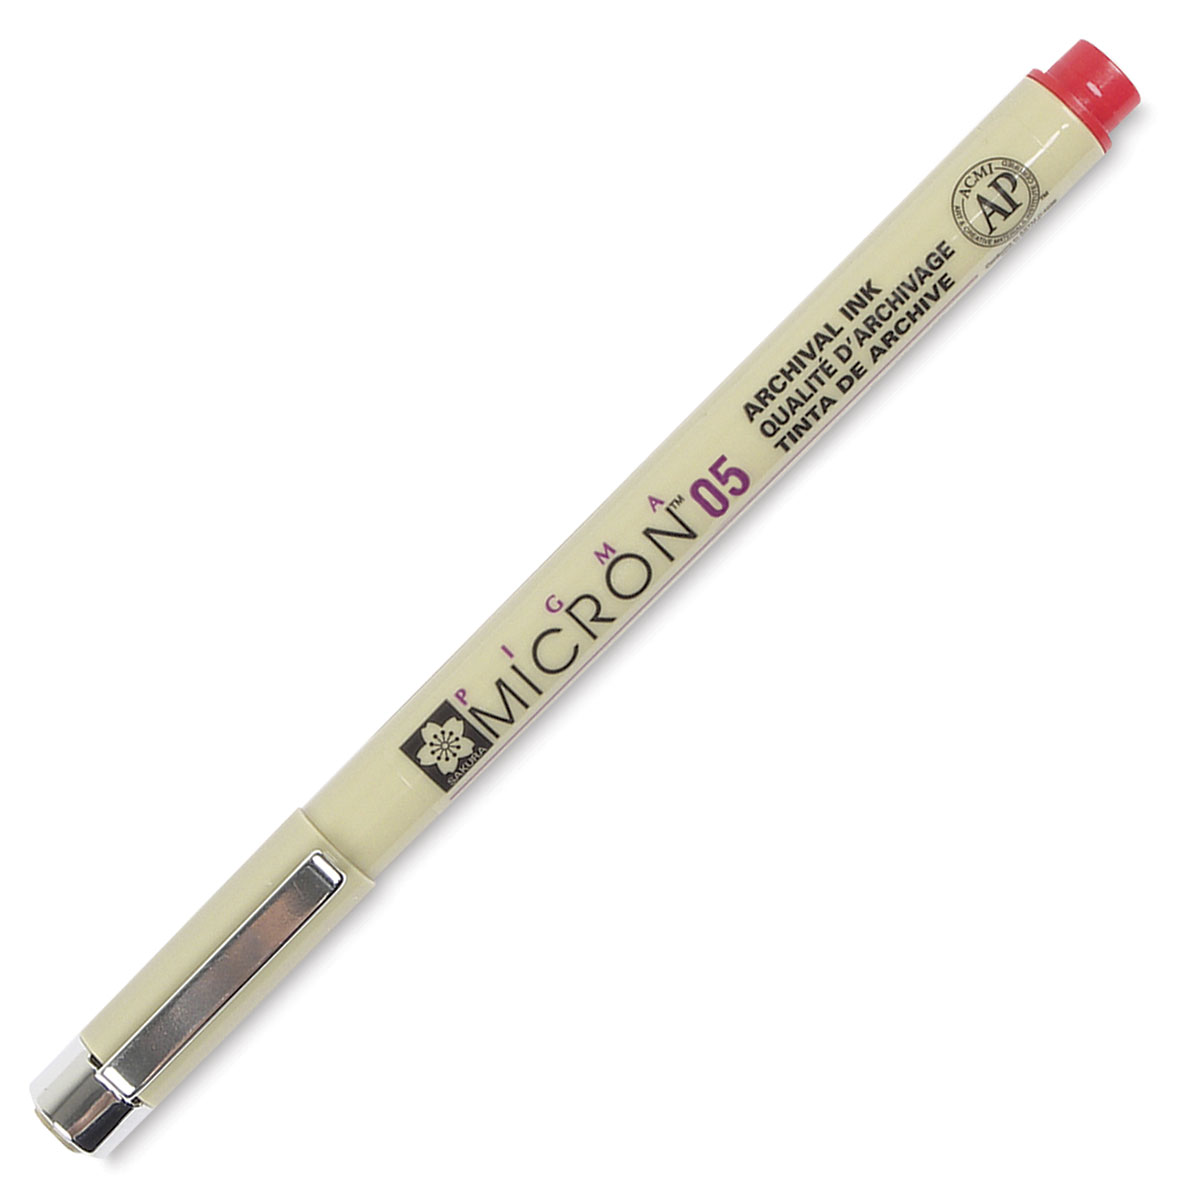 Sakura Pigma Micron Ultra-fine Colored Pen05 (0.45mm) / Green